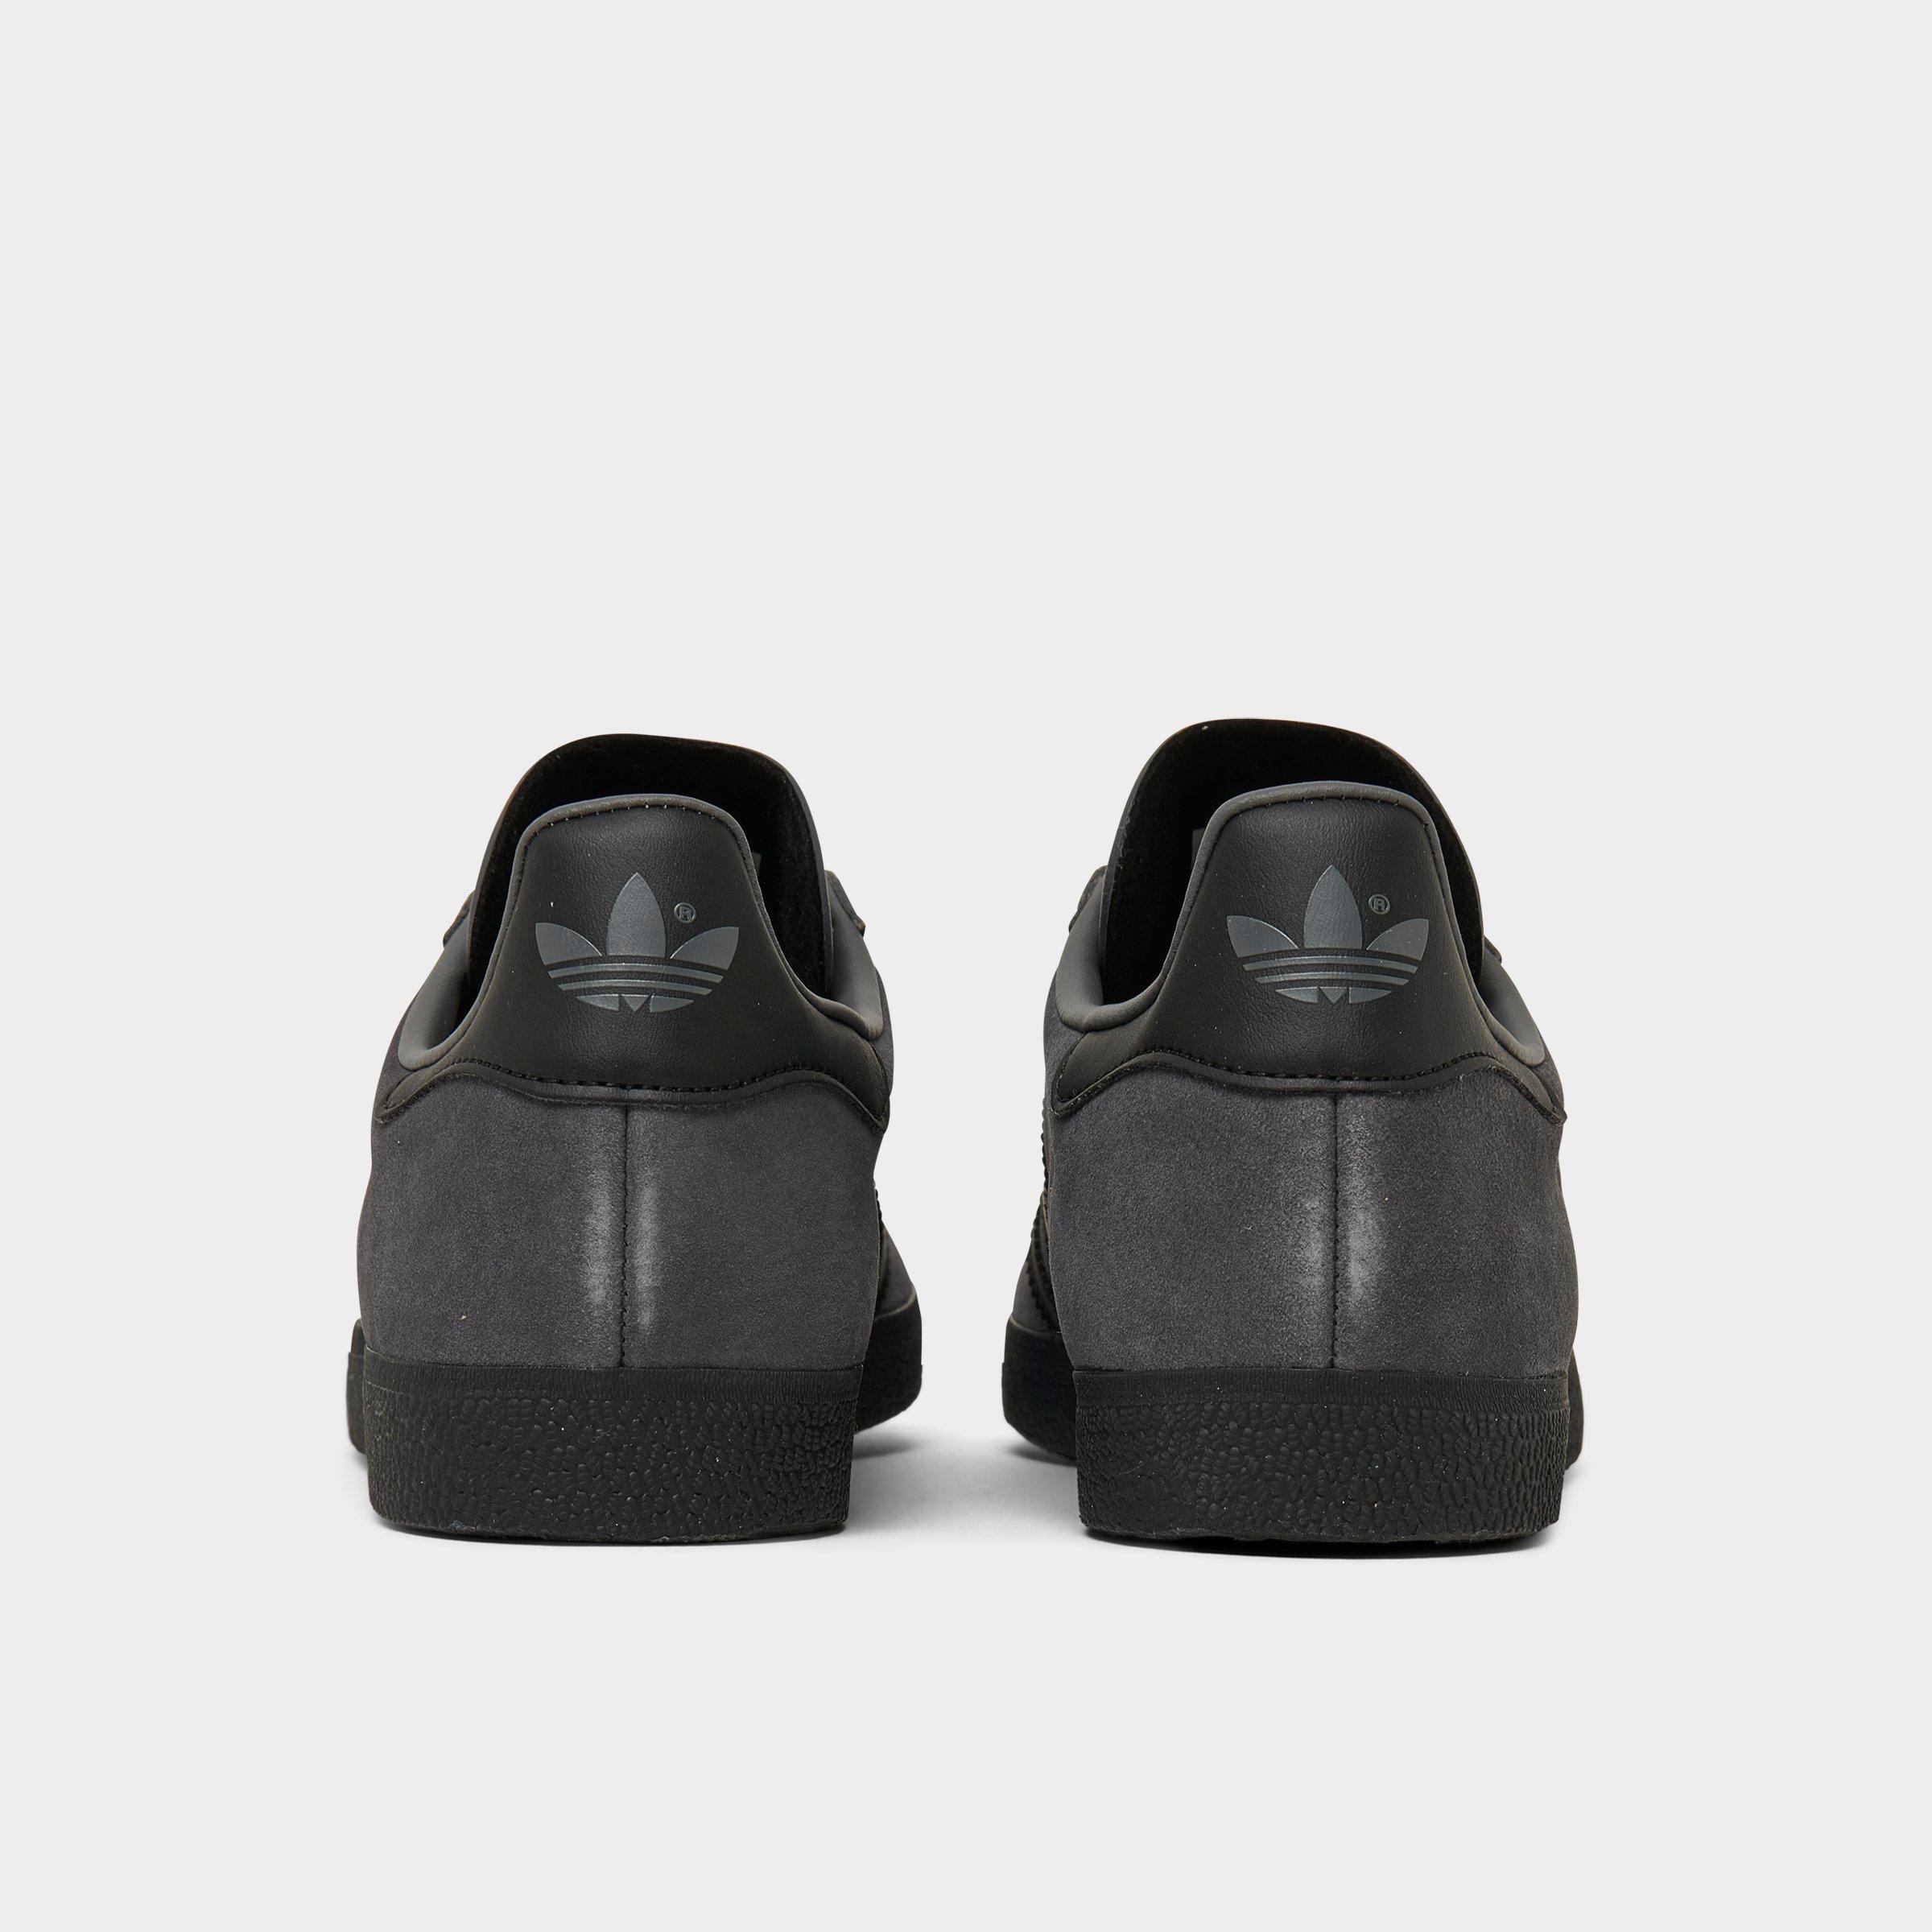 adidas originals gazelle trainers in dark grey